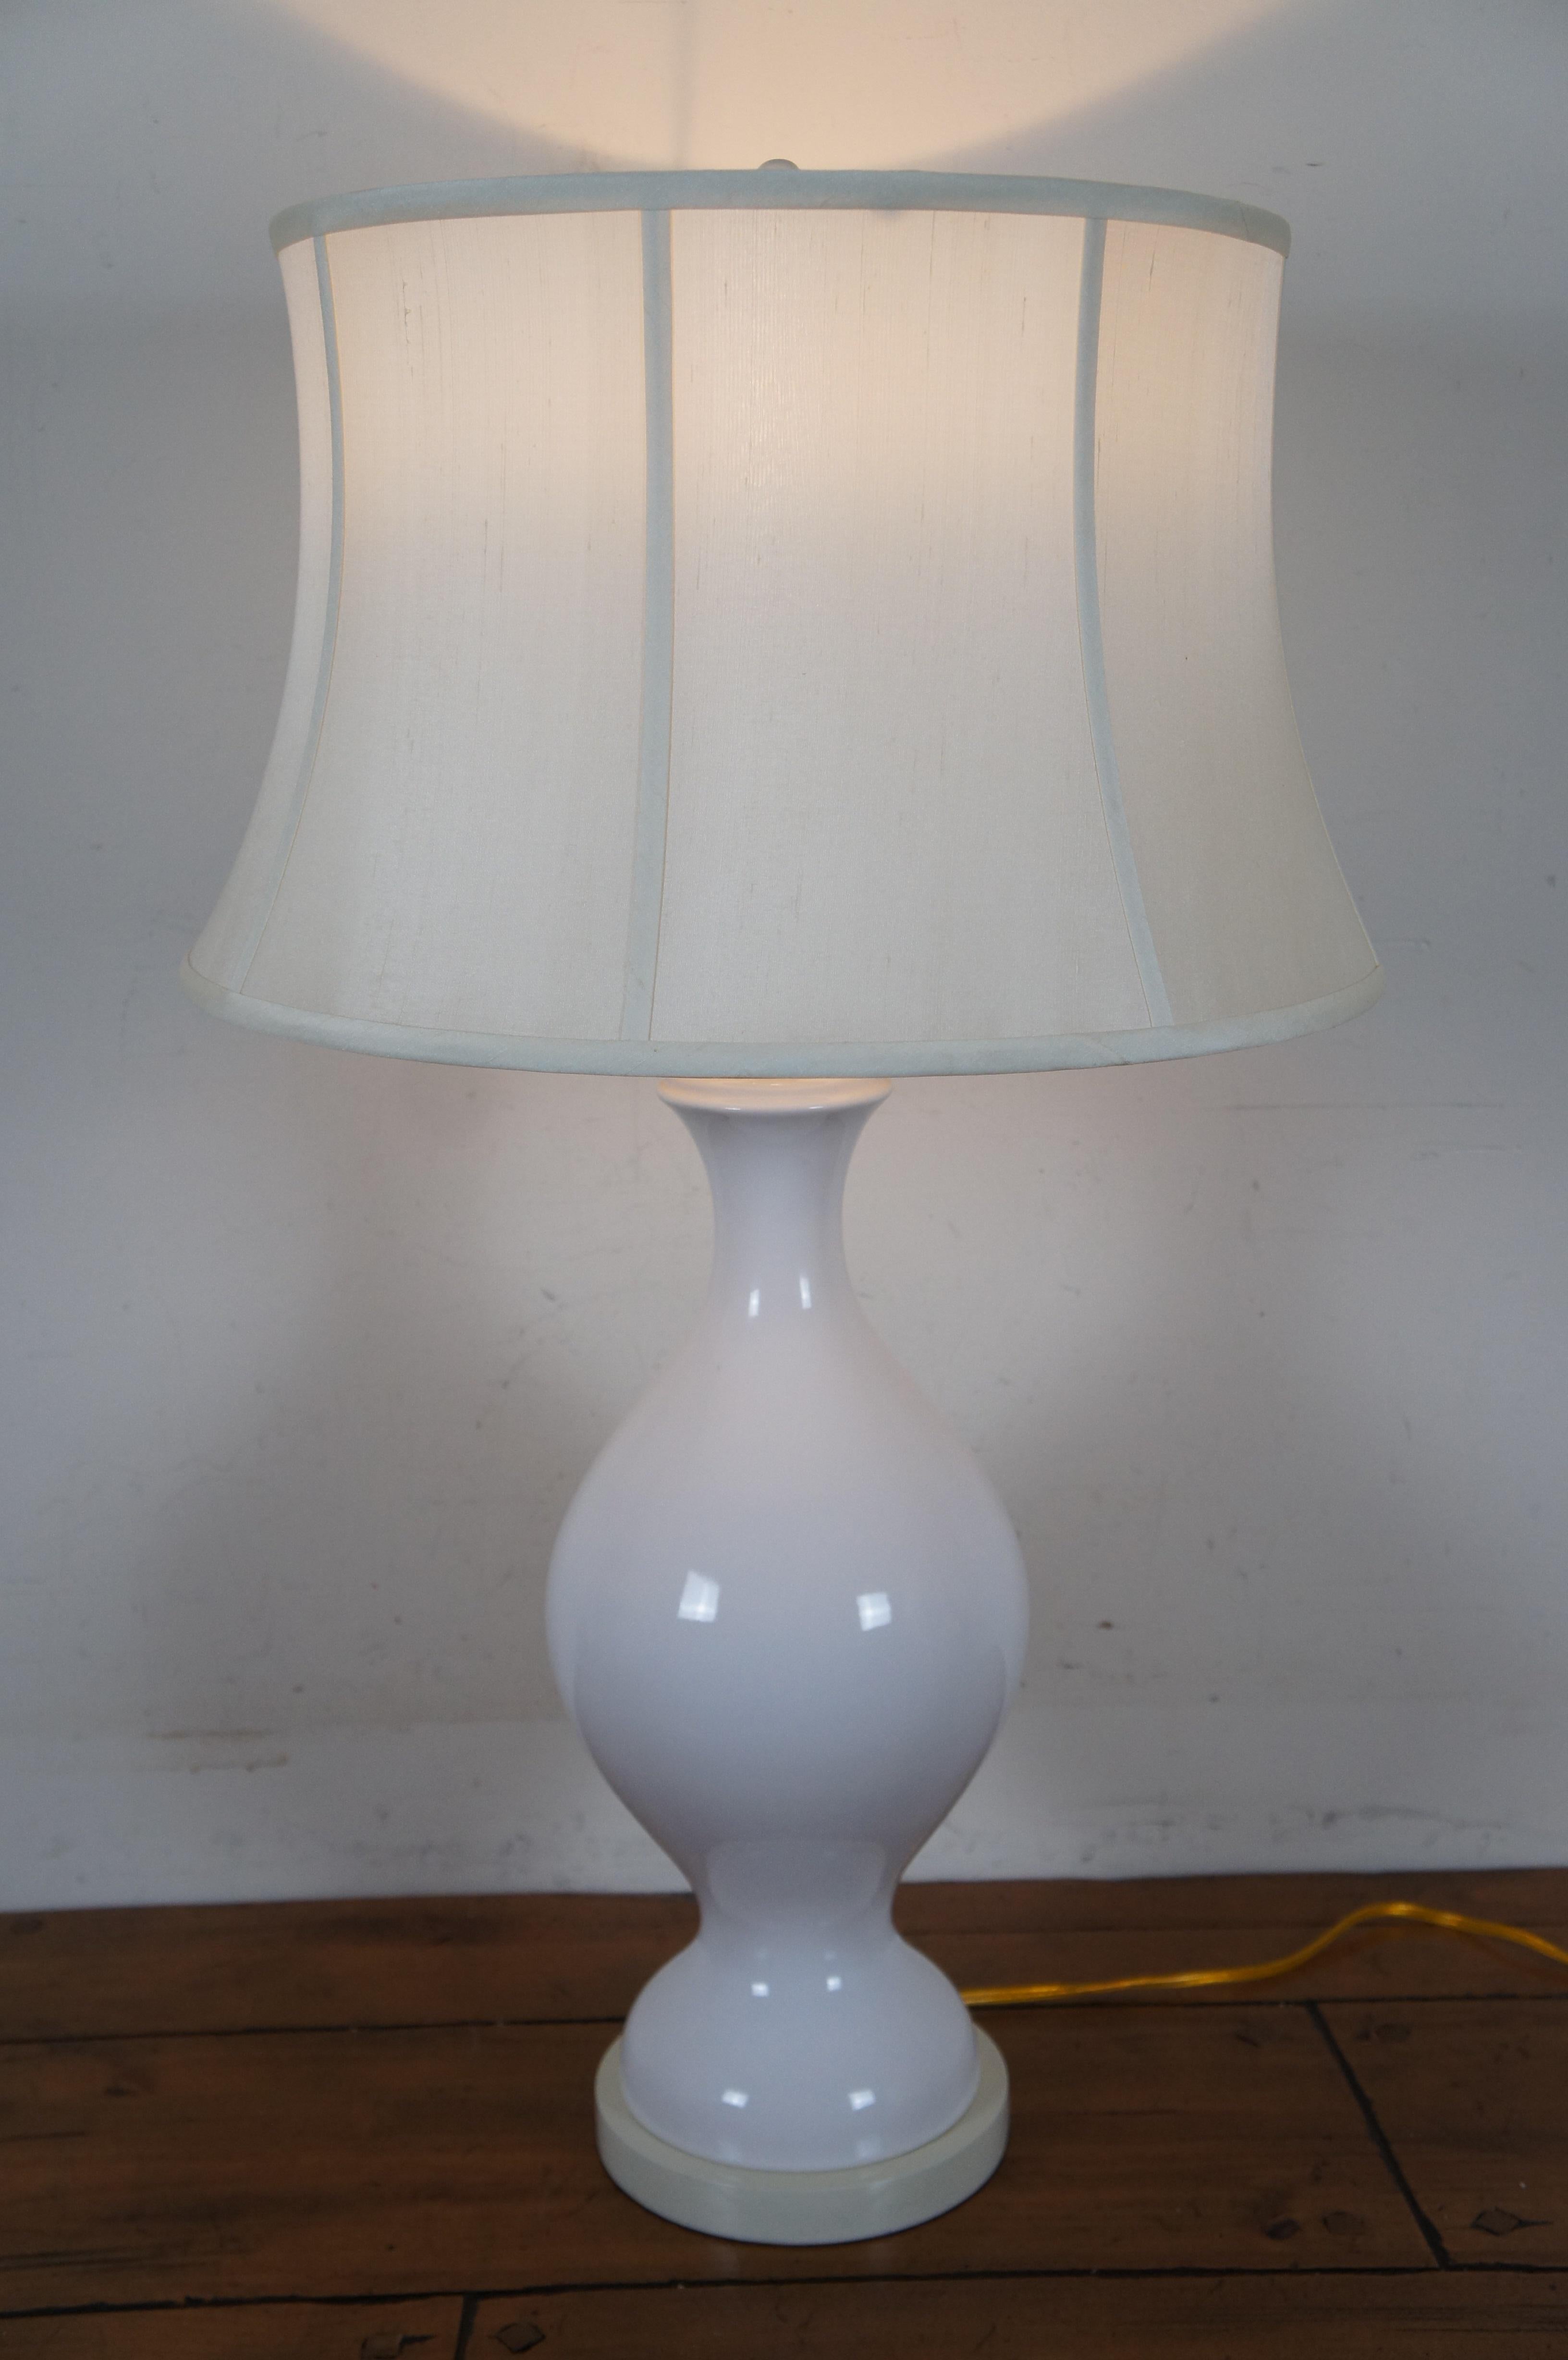 Vintage White Ceramic Urn Vase Shaped Table Lamp & Shade w Wood Base 6